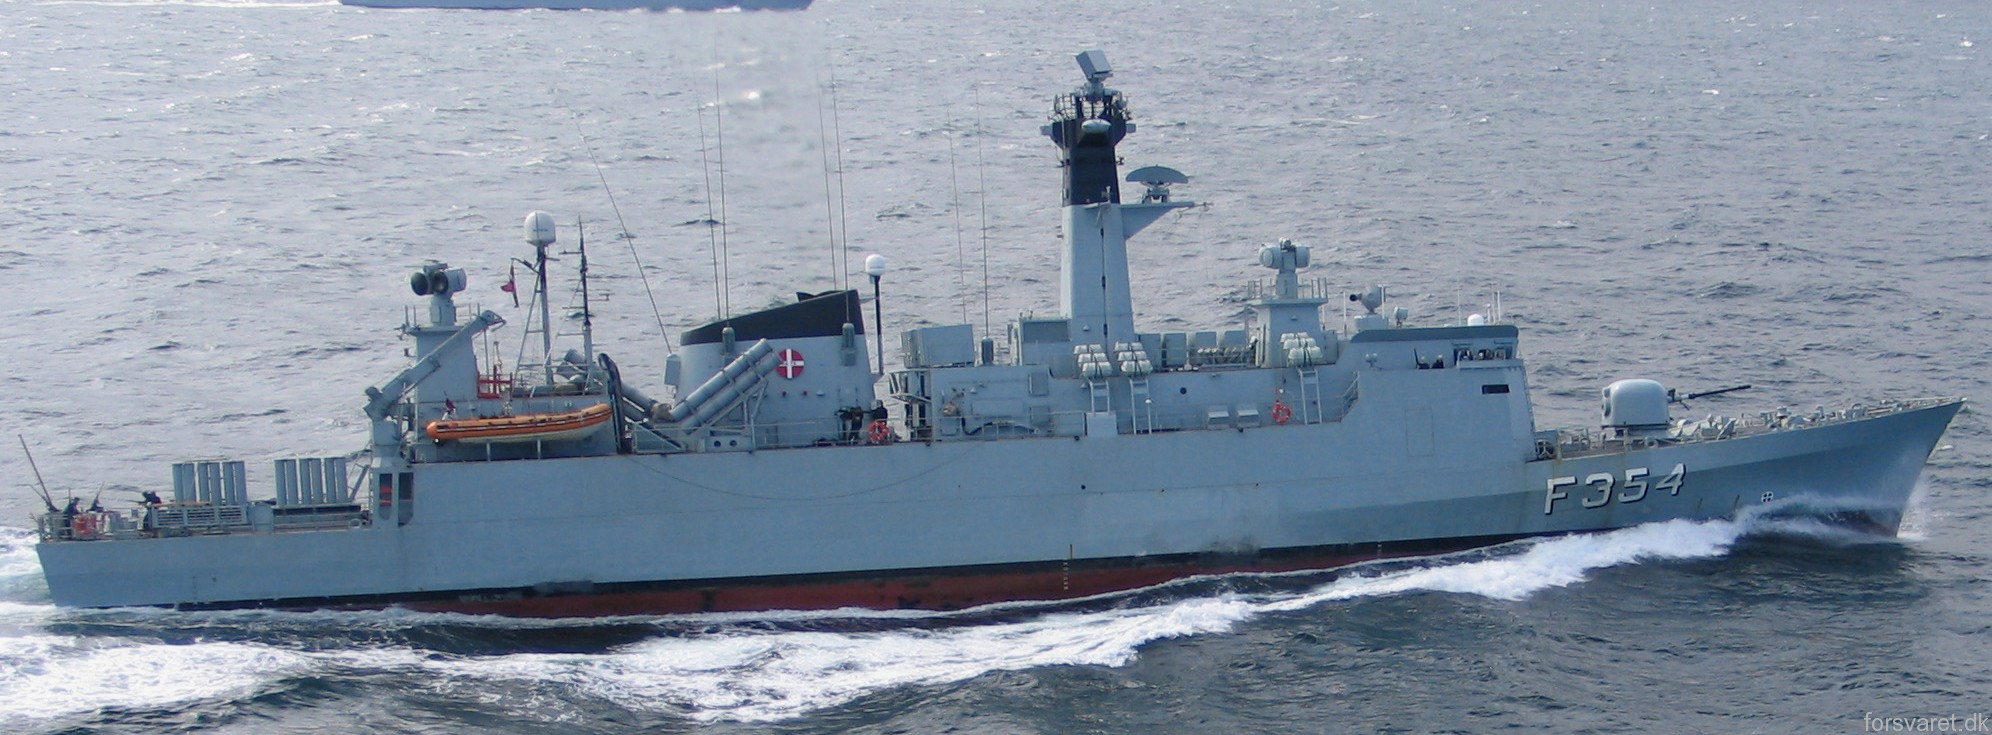 f-354 hdms niels juel class corvette royal danish navy kongelige danske marine kdm 55